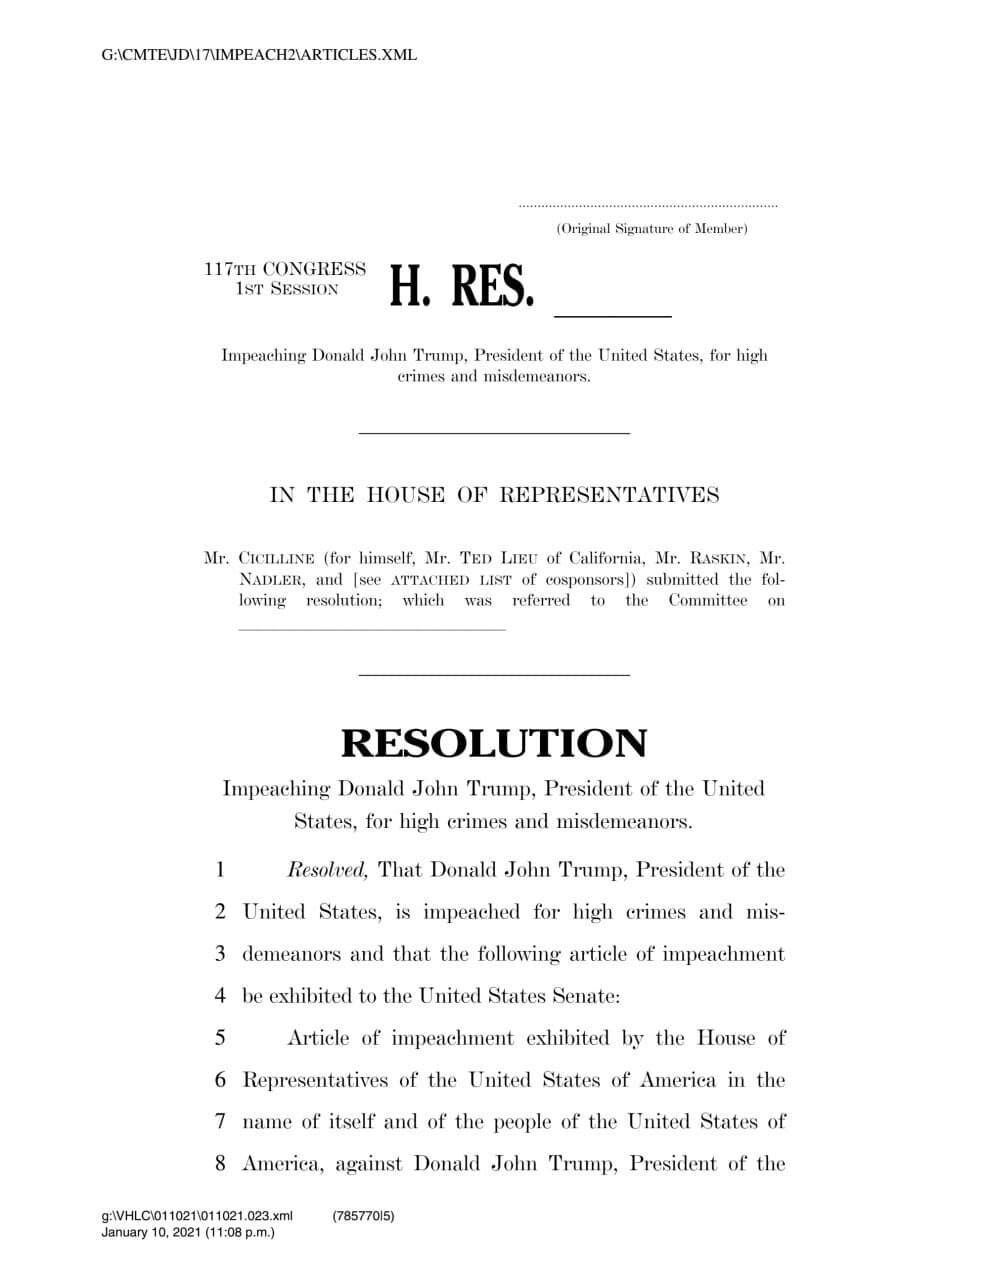 Палата представителей США опубликовала текст резолюции об импичменте Трампа